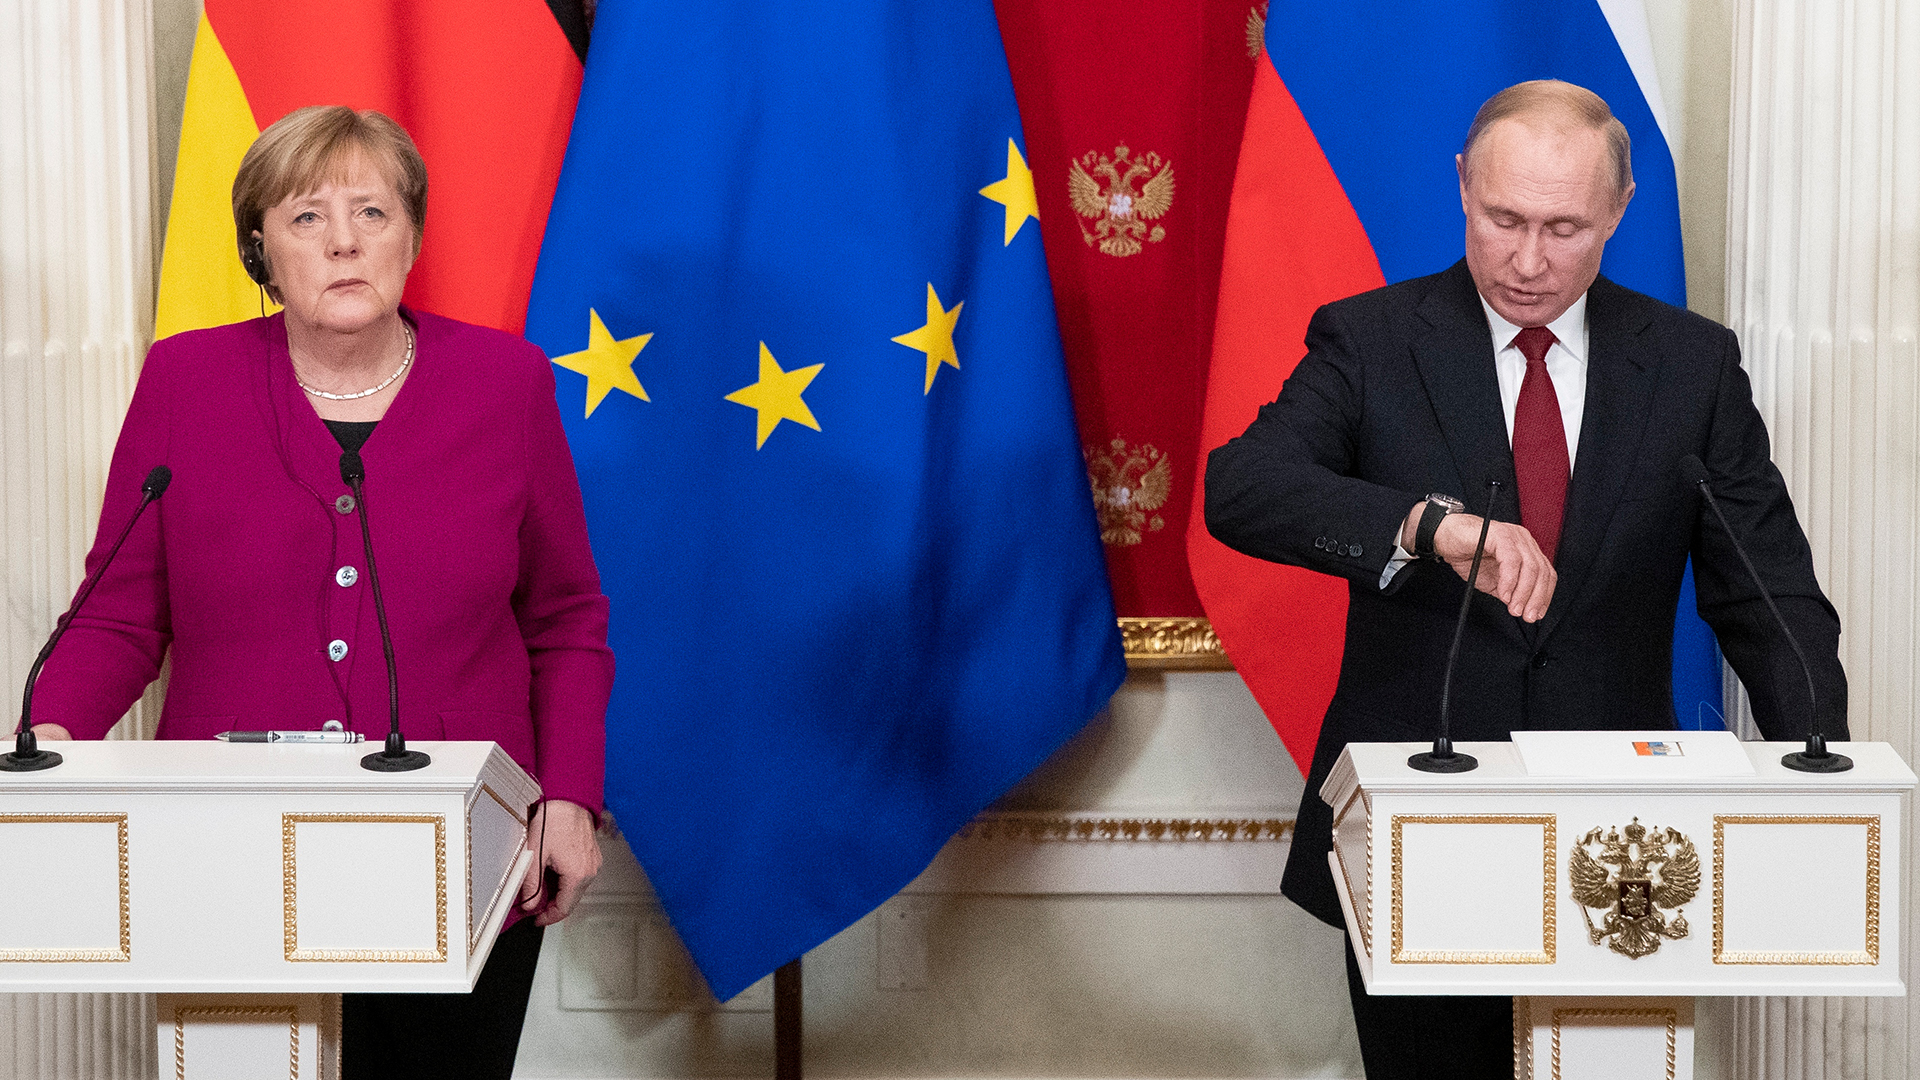 Merkel zu Russland-Politik: “Haben nach der Krimannexion alles versucht”